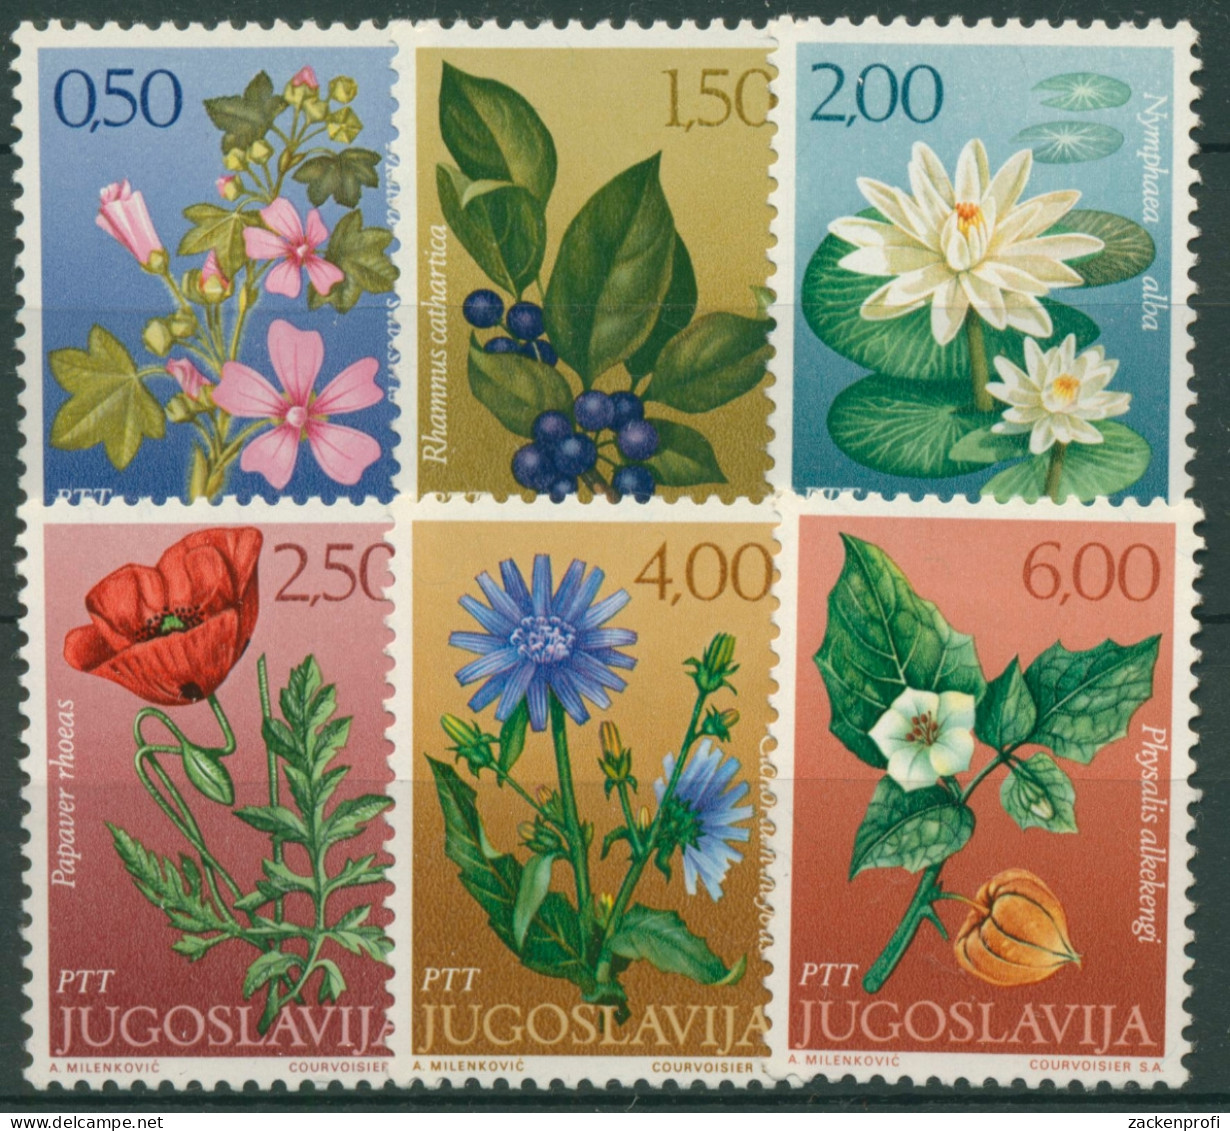 Jugoslawien 1971 Pflanzen Blumen Malve Wegwarte Seerose 1420/25 Postfrisch - Nuevos